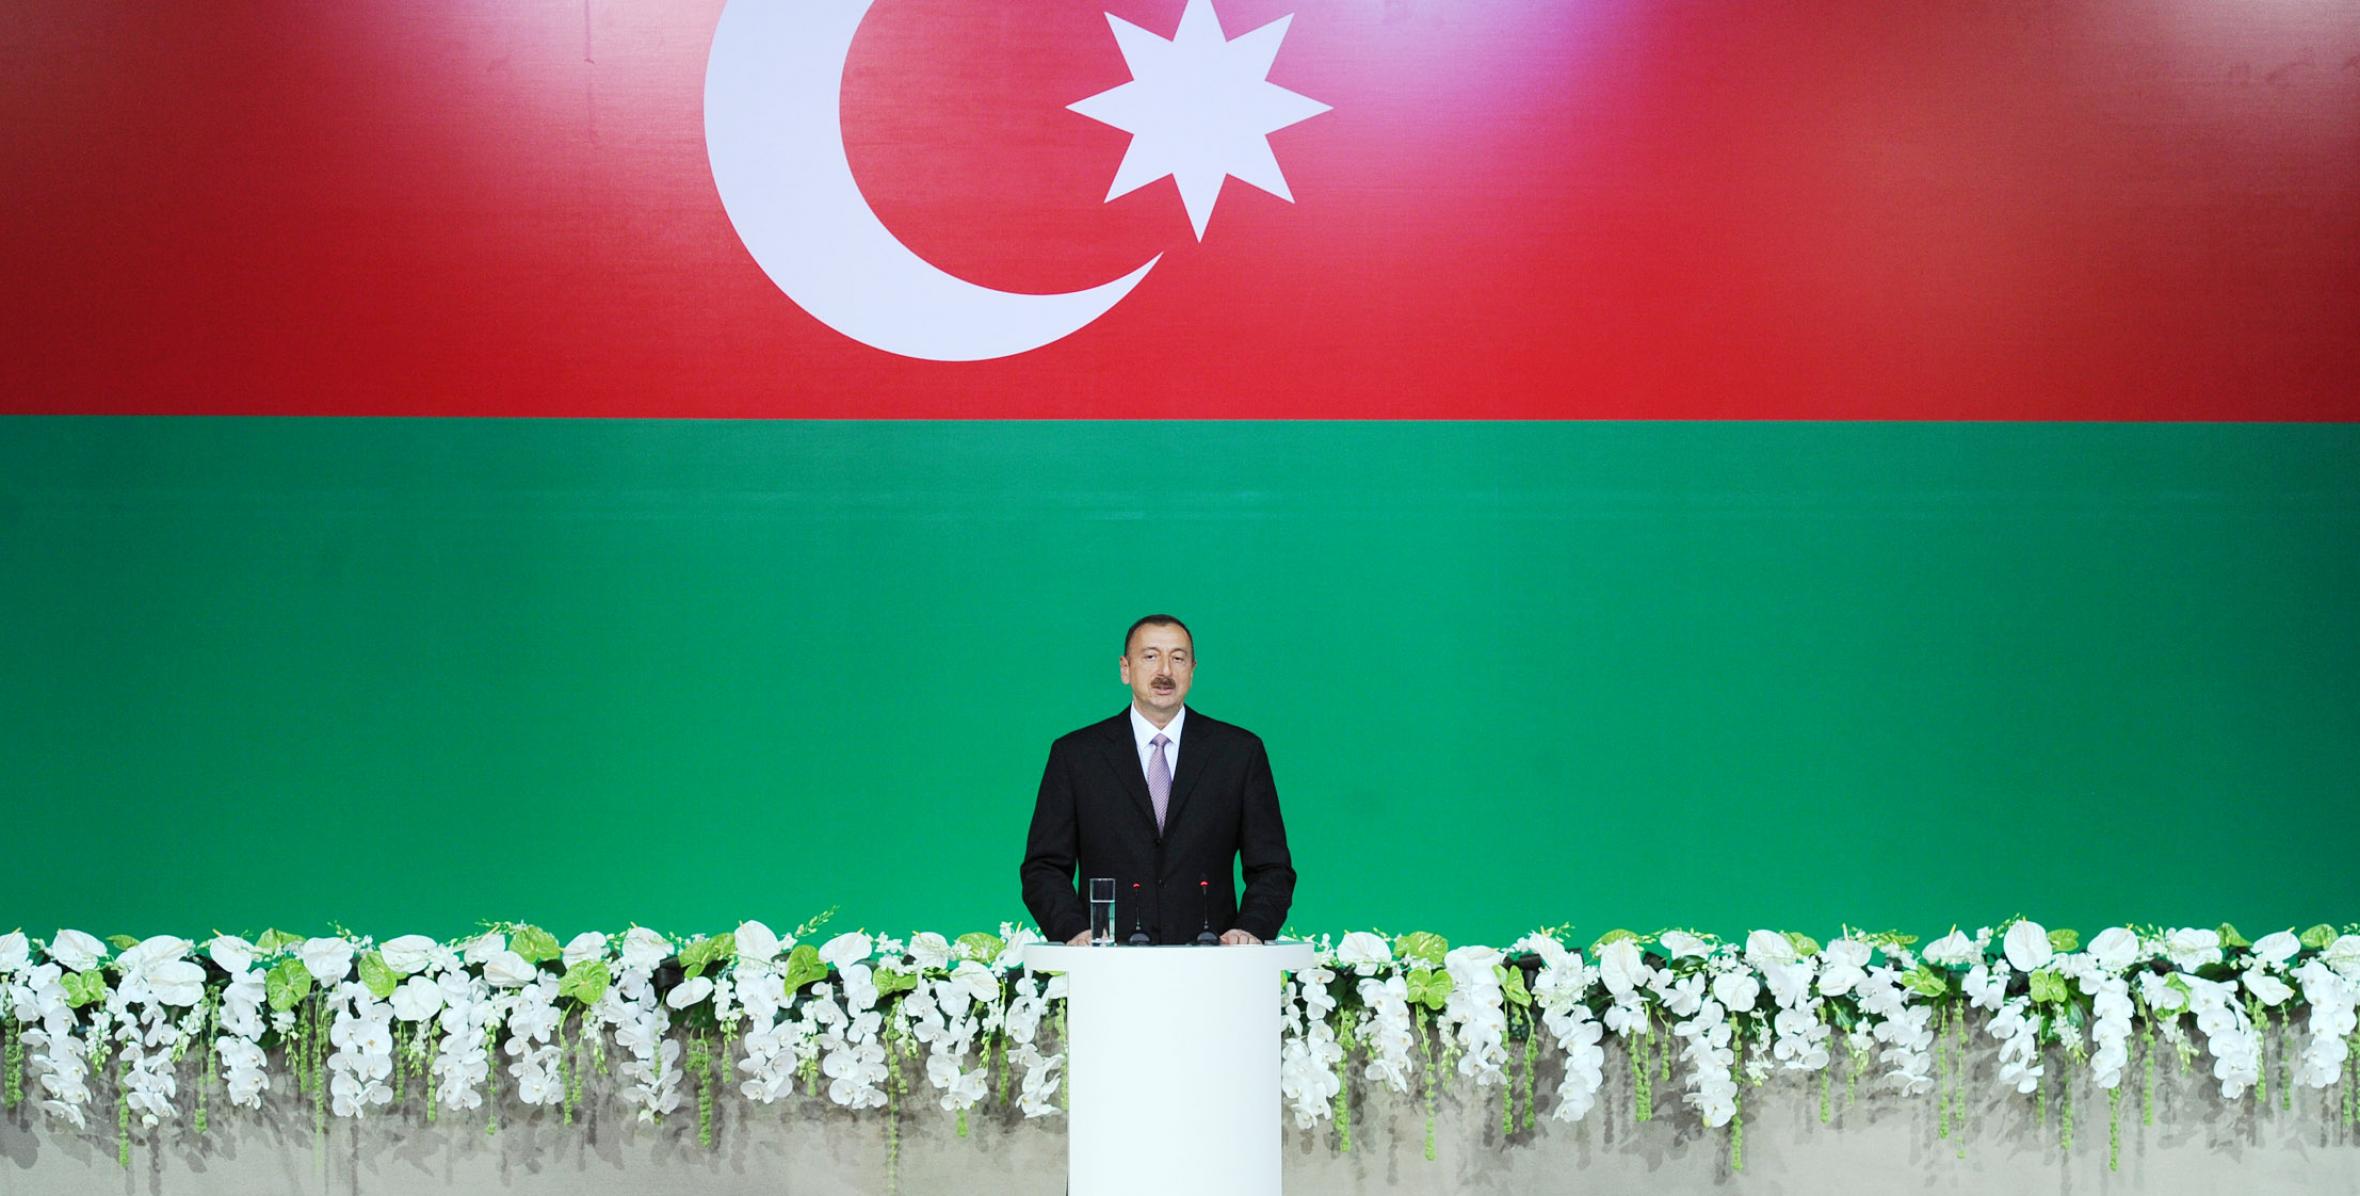 Ильхам Алиев принял участие в официальном приеме по случаю национального праздника Азербайджана – Дня Республики